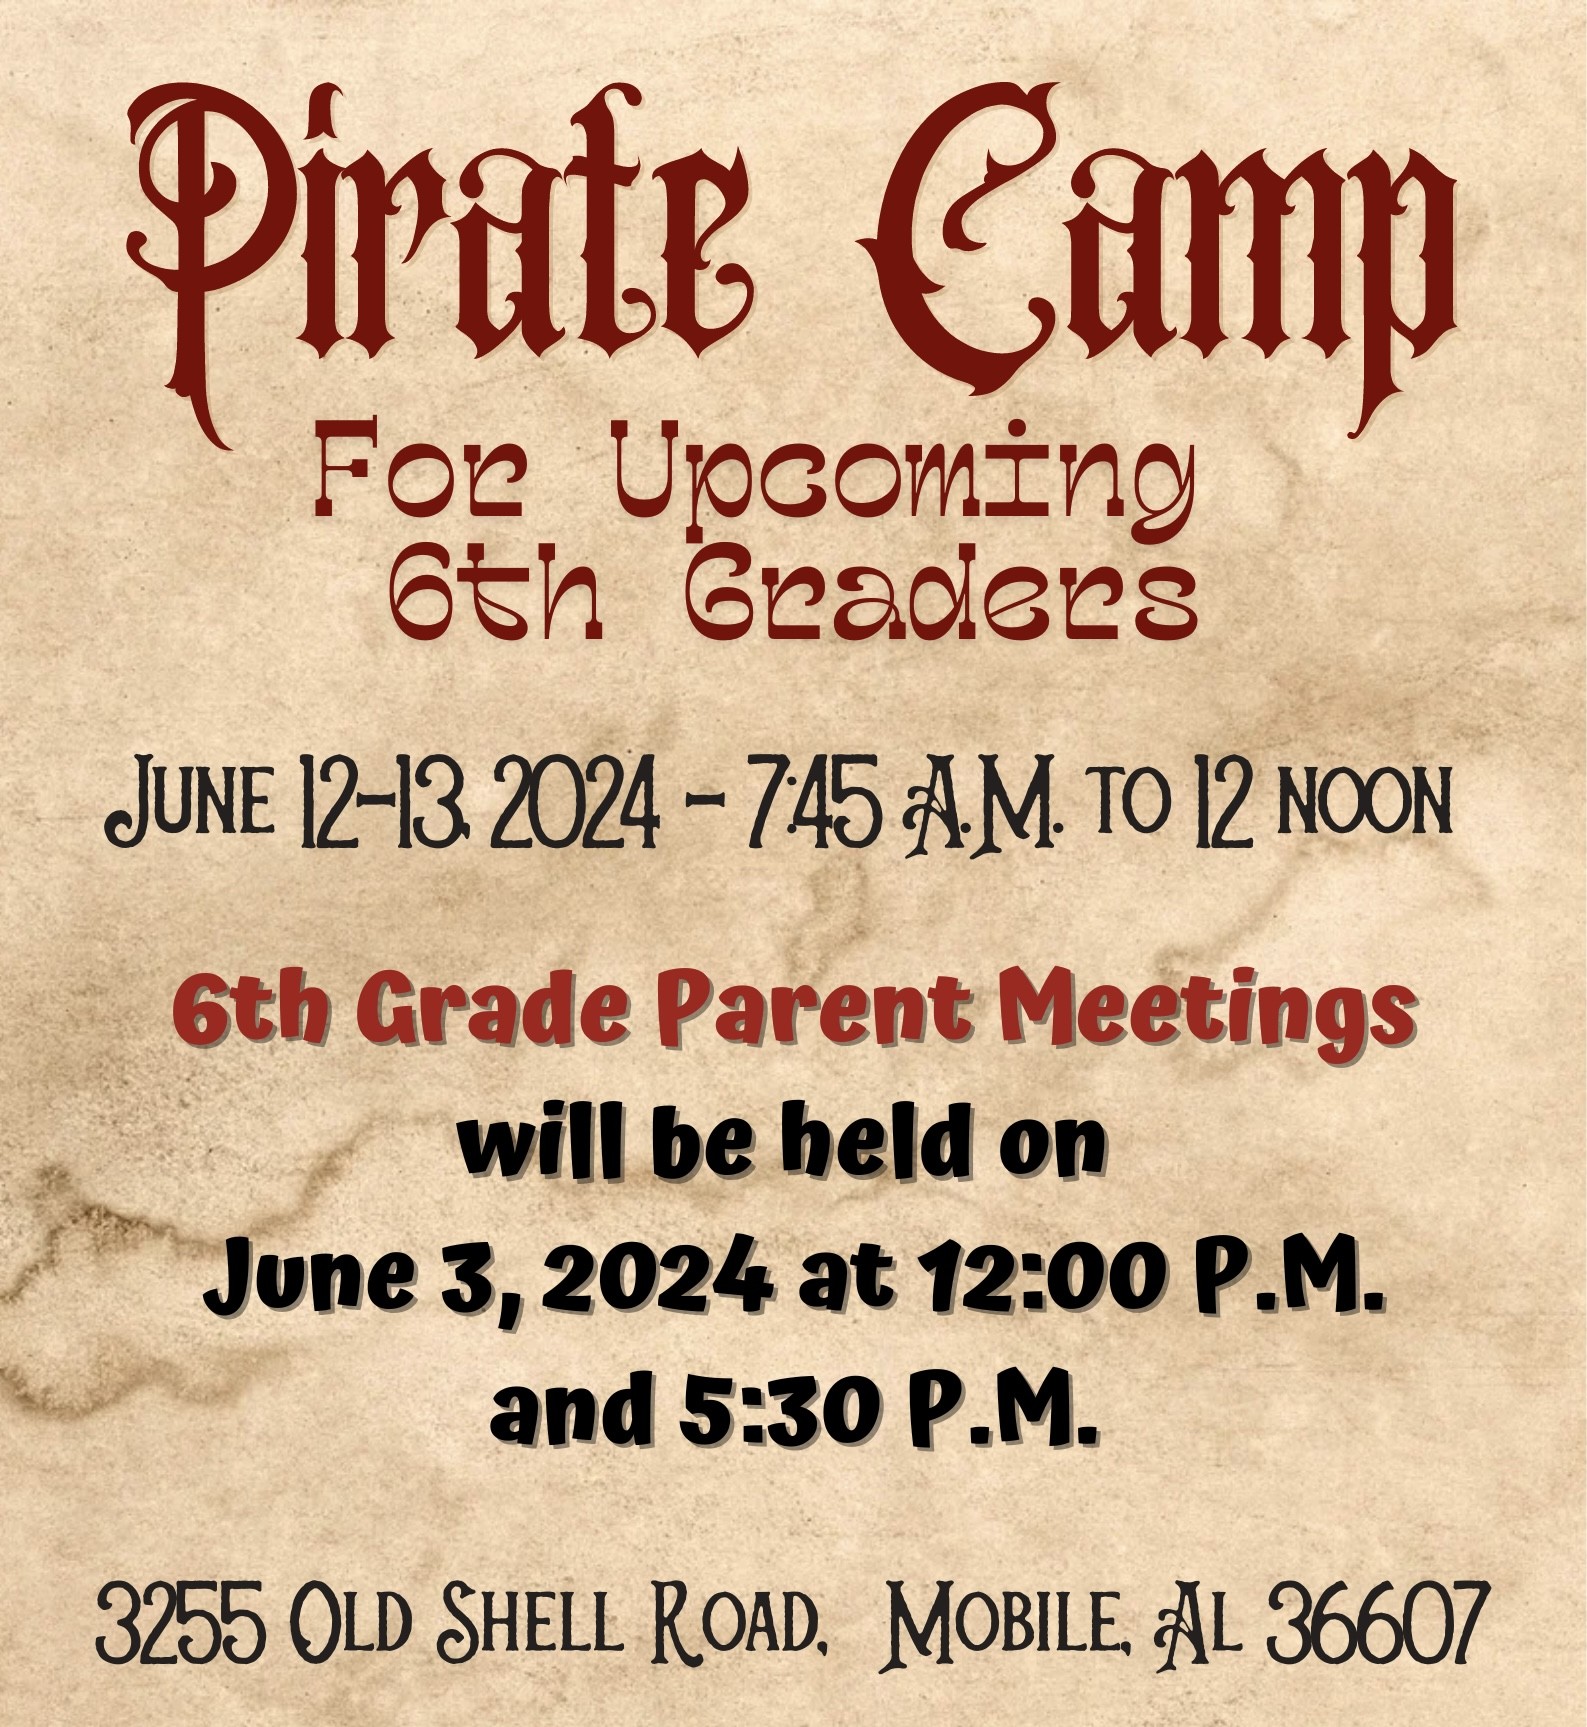 pirate camp 2024